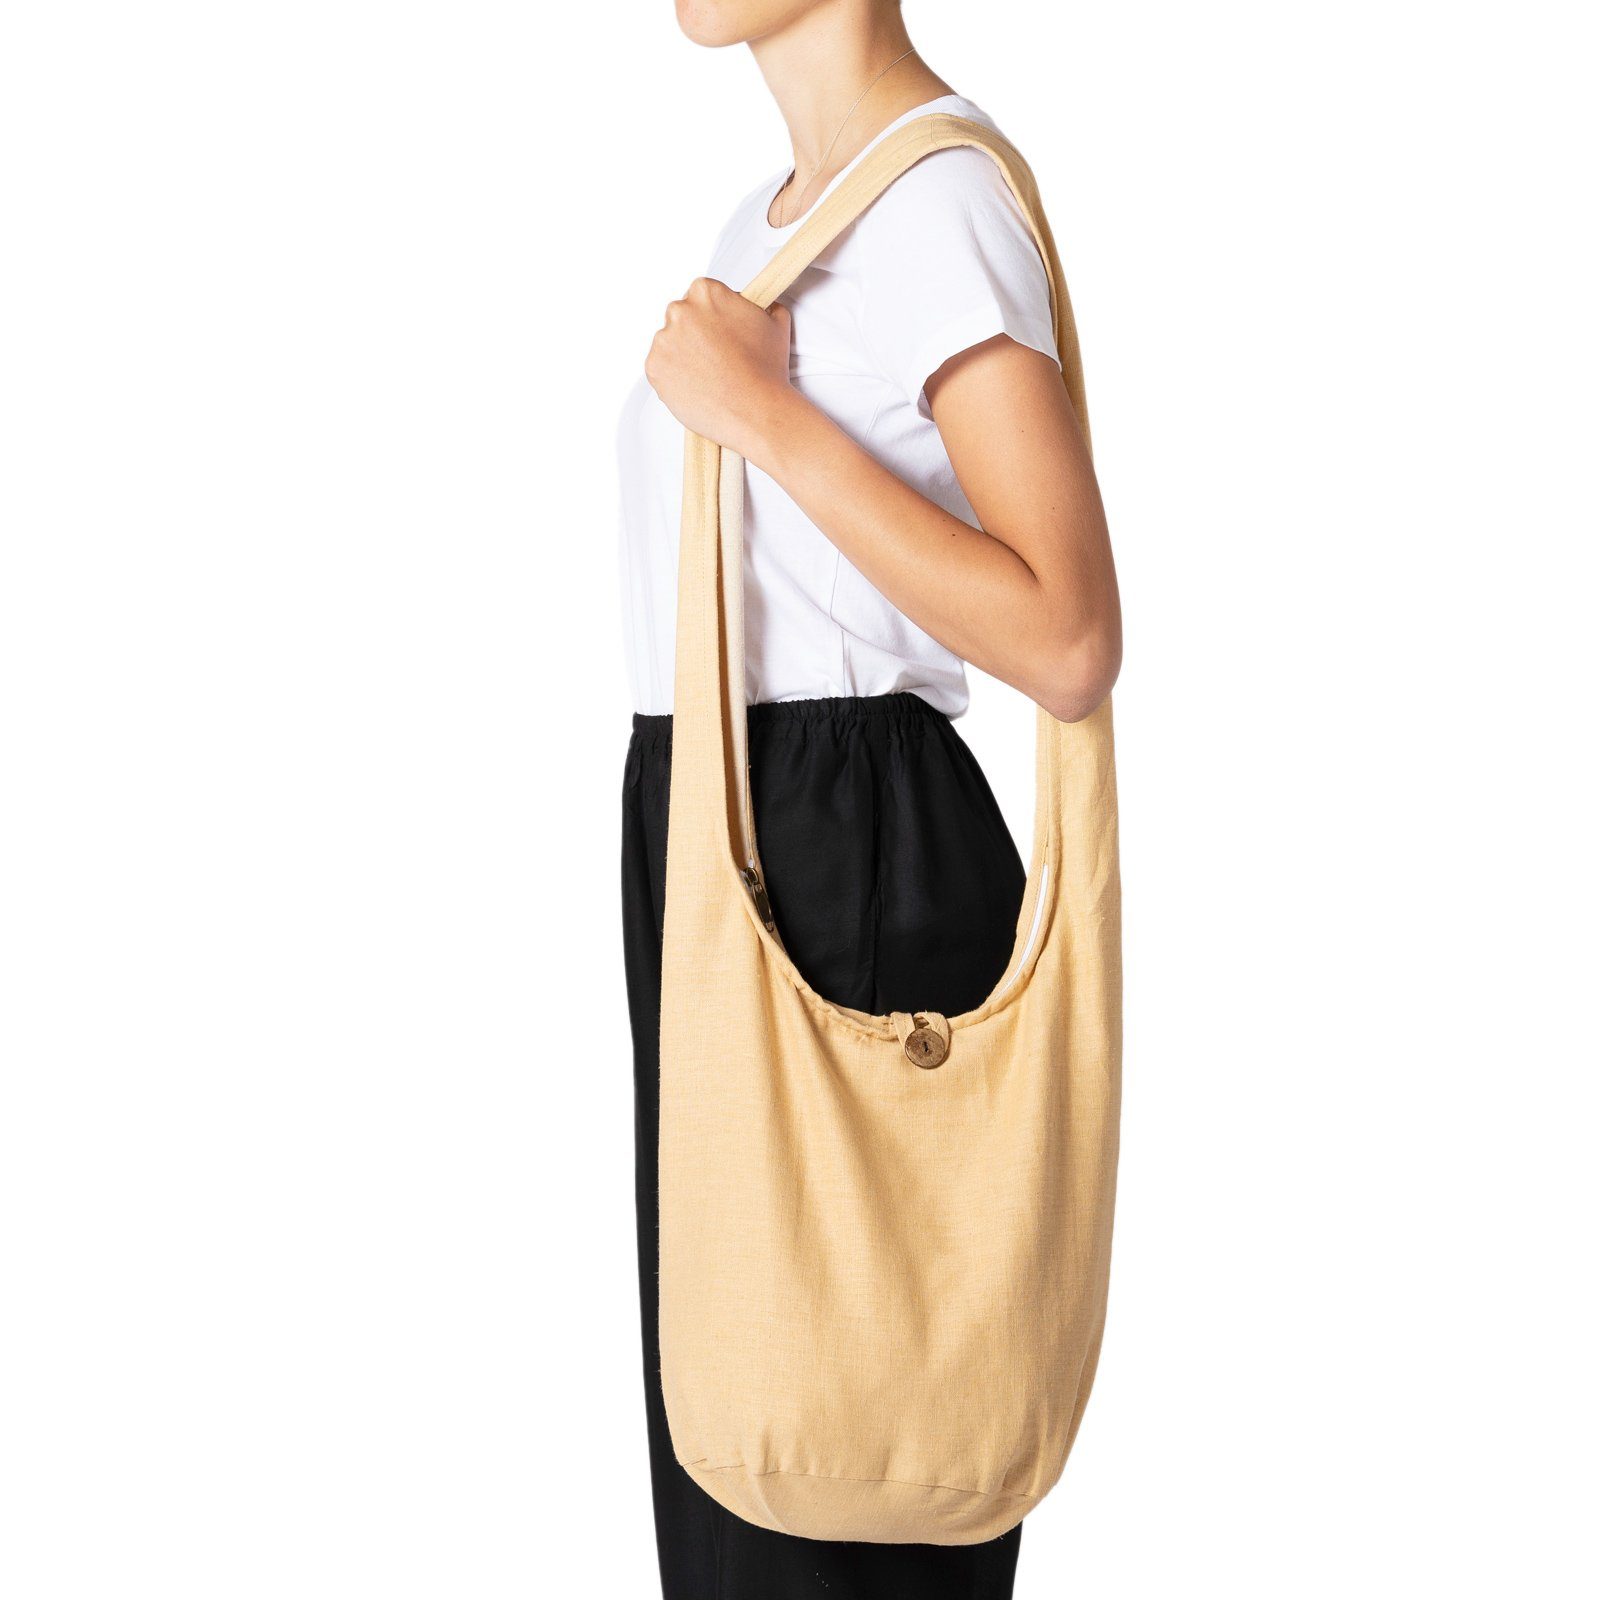 PANASIAM Yogatasche Schulterbeutel einfarbig Schultertasche aus Hanf in 2 Größen, Umhängetasche auch als Wickeltasche Handtasche oder Strandtasche cream-weiß